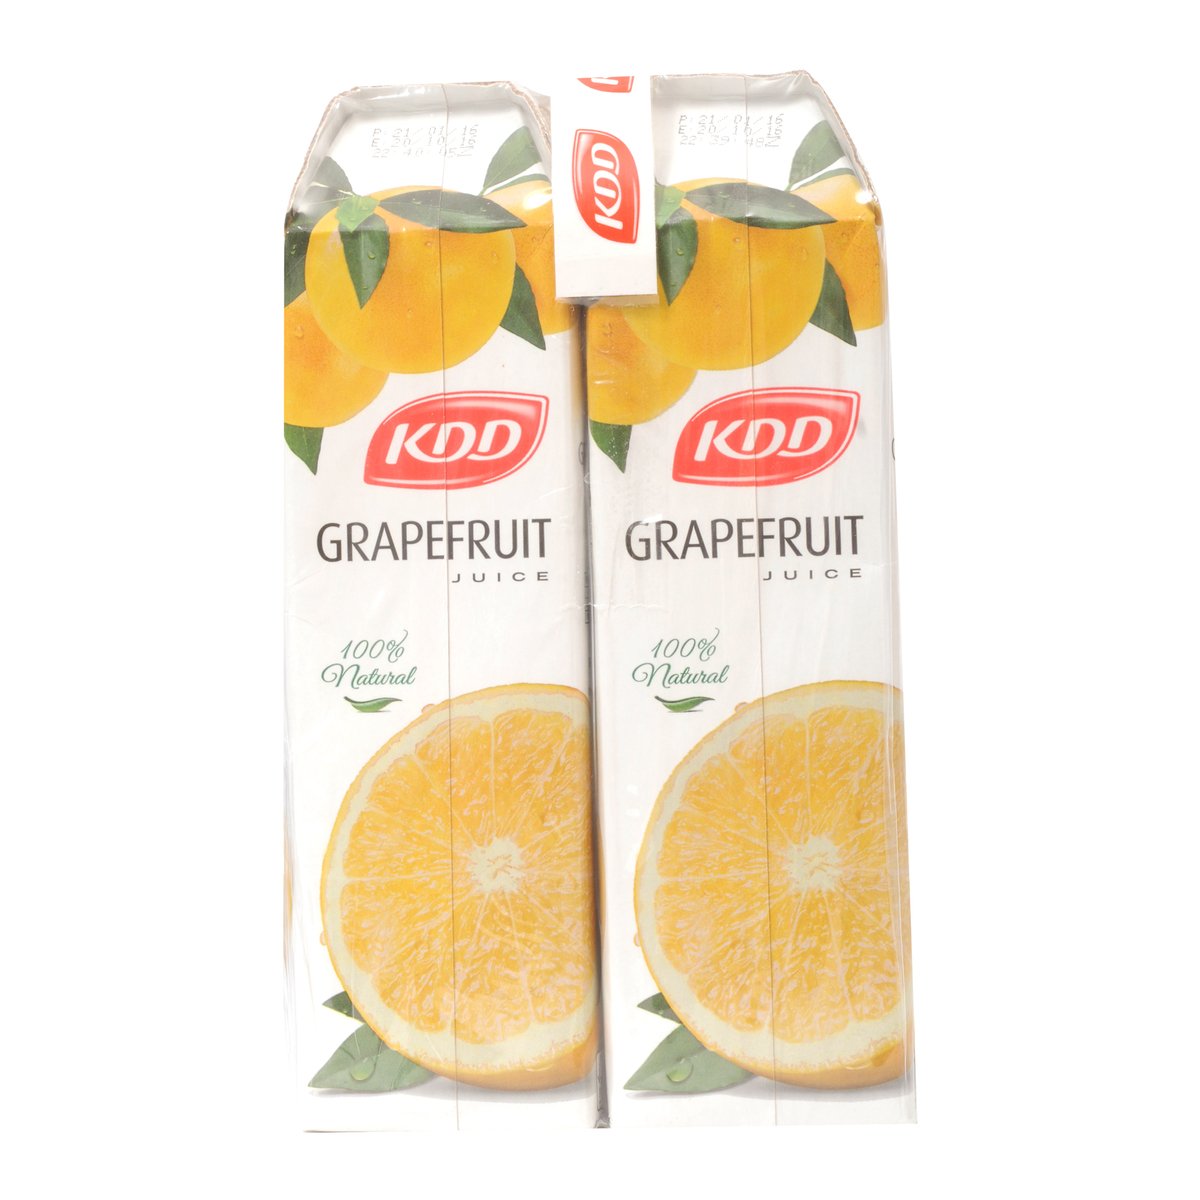 KDD Grape Fruit Juice 1Litre x 4 Pieces